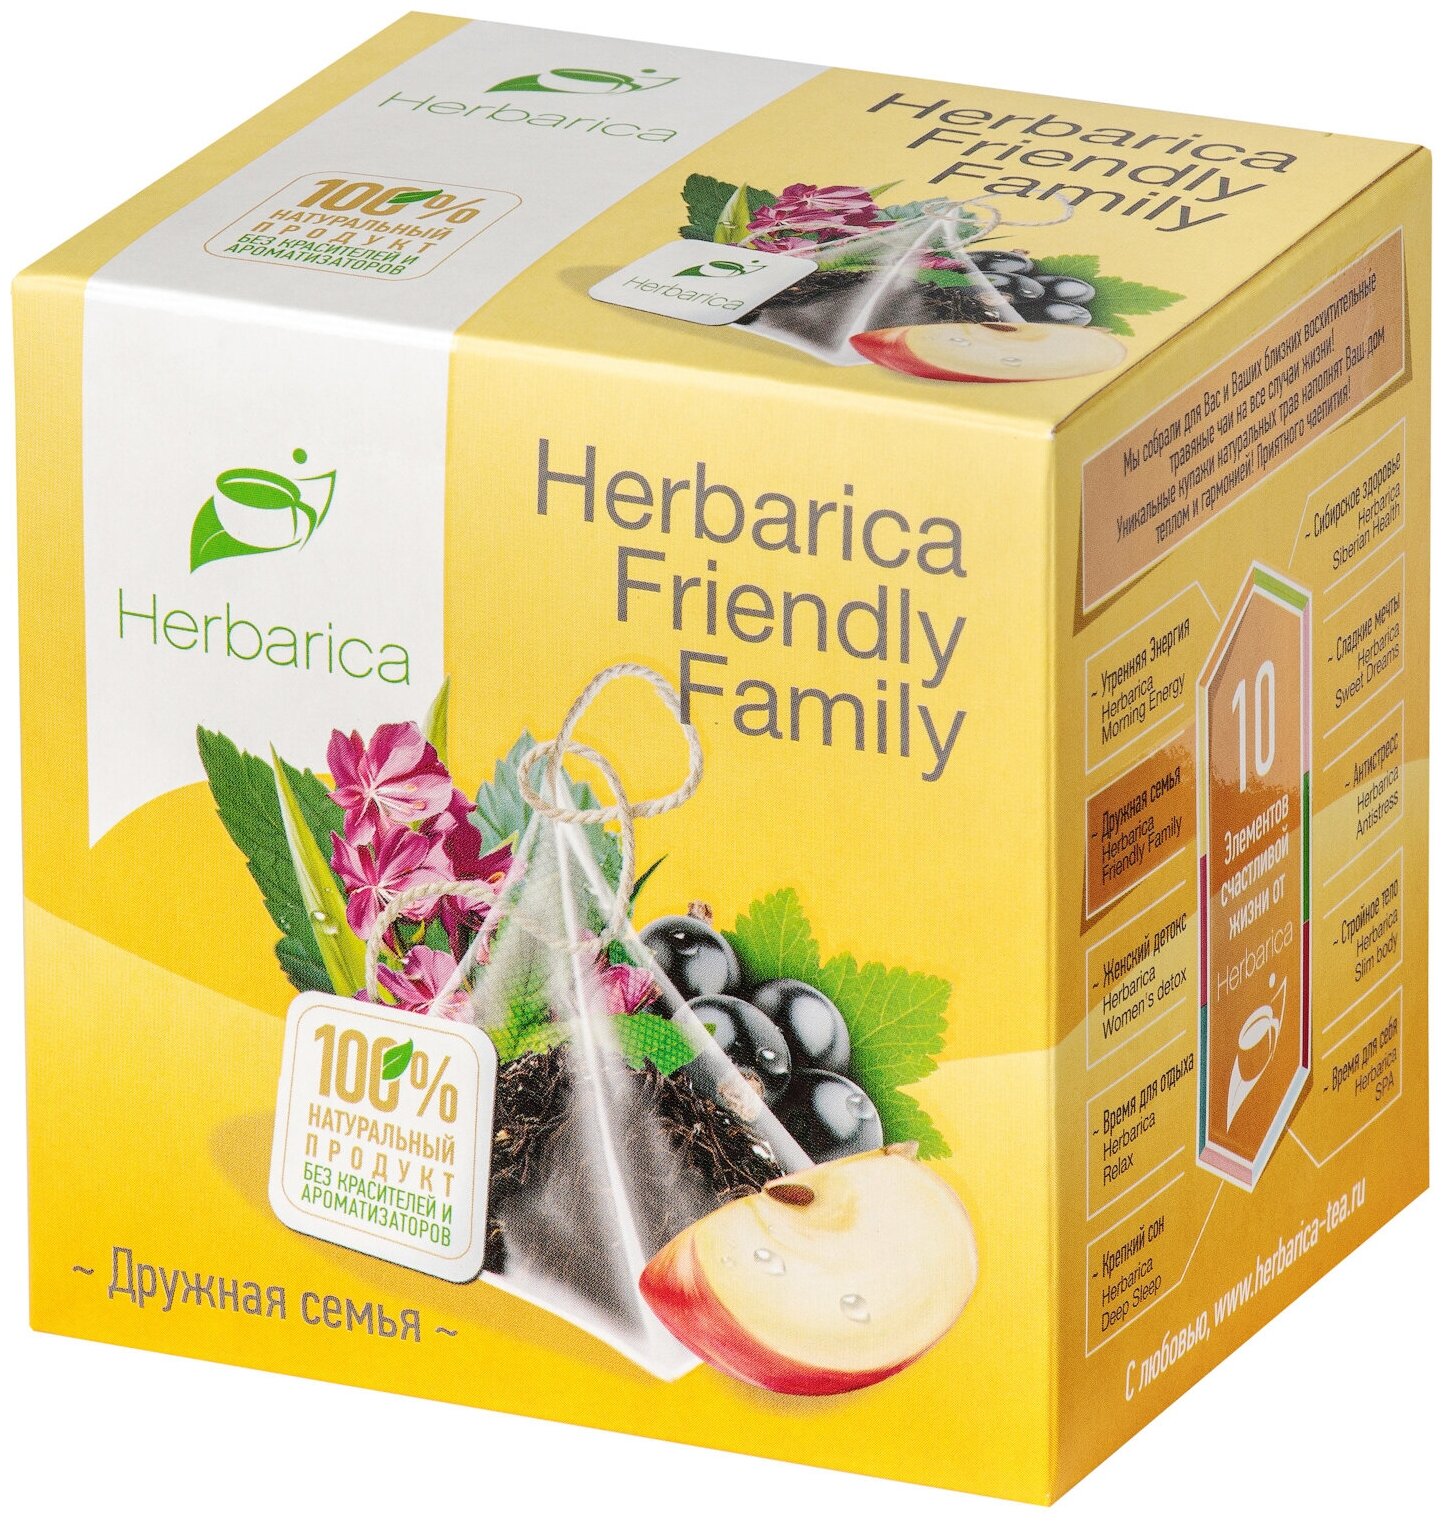 Herbarica Friendly Family. Гербарика Дружная семья травяной чай 20 пирамидок с листьями смородины, яблоком, шиповником, иван-чаем, лепестками розы